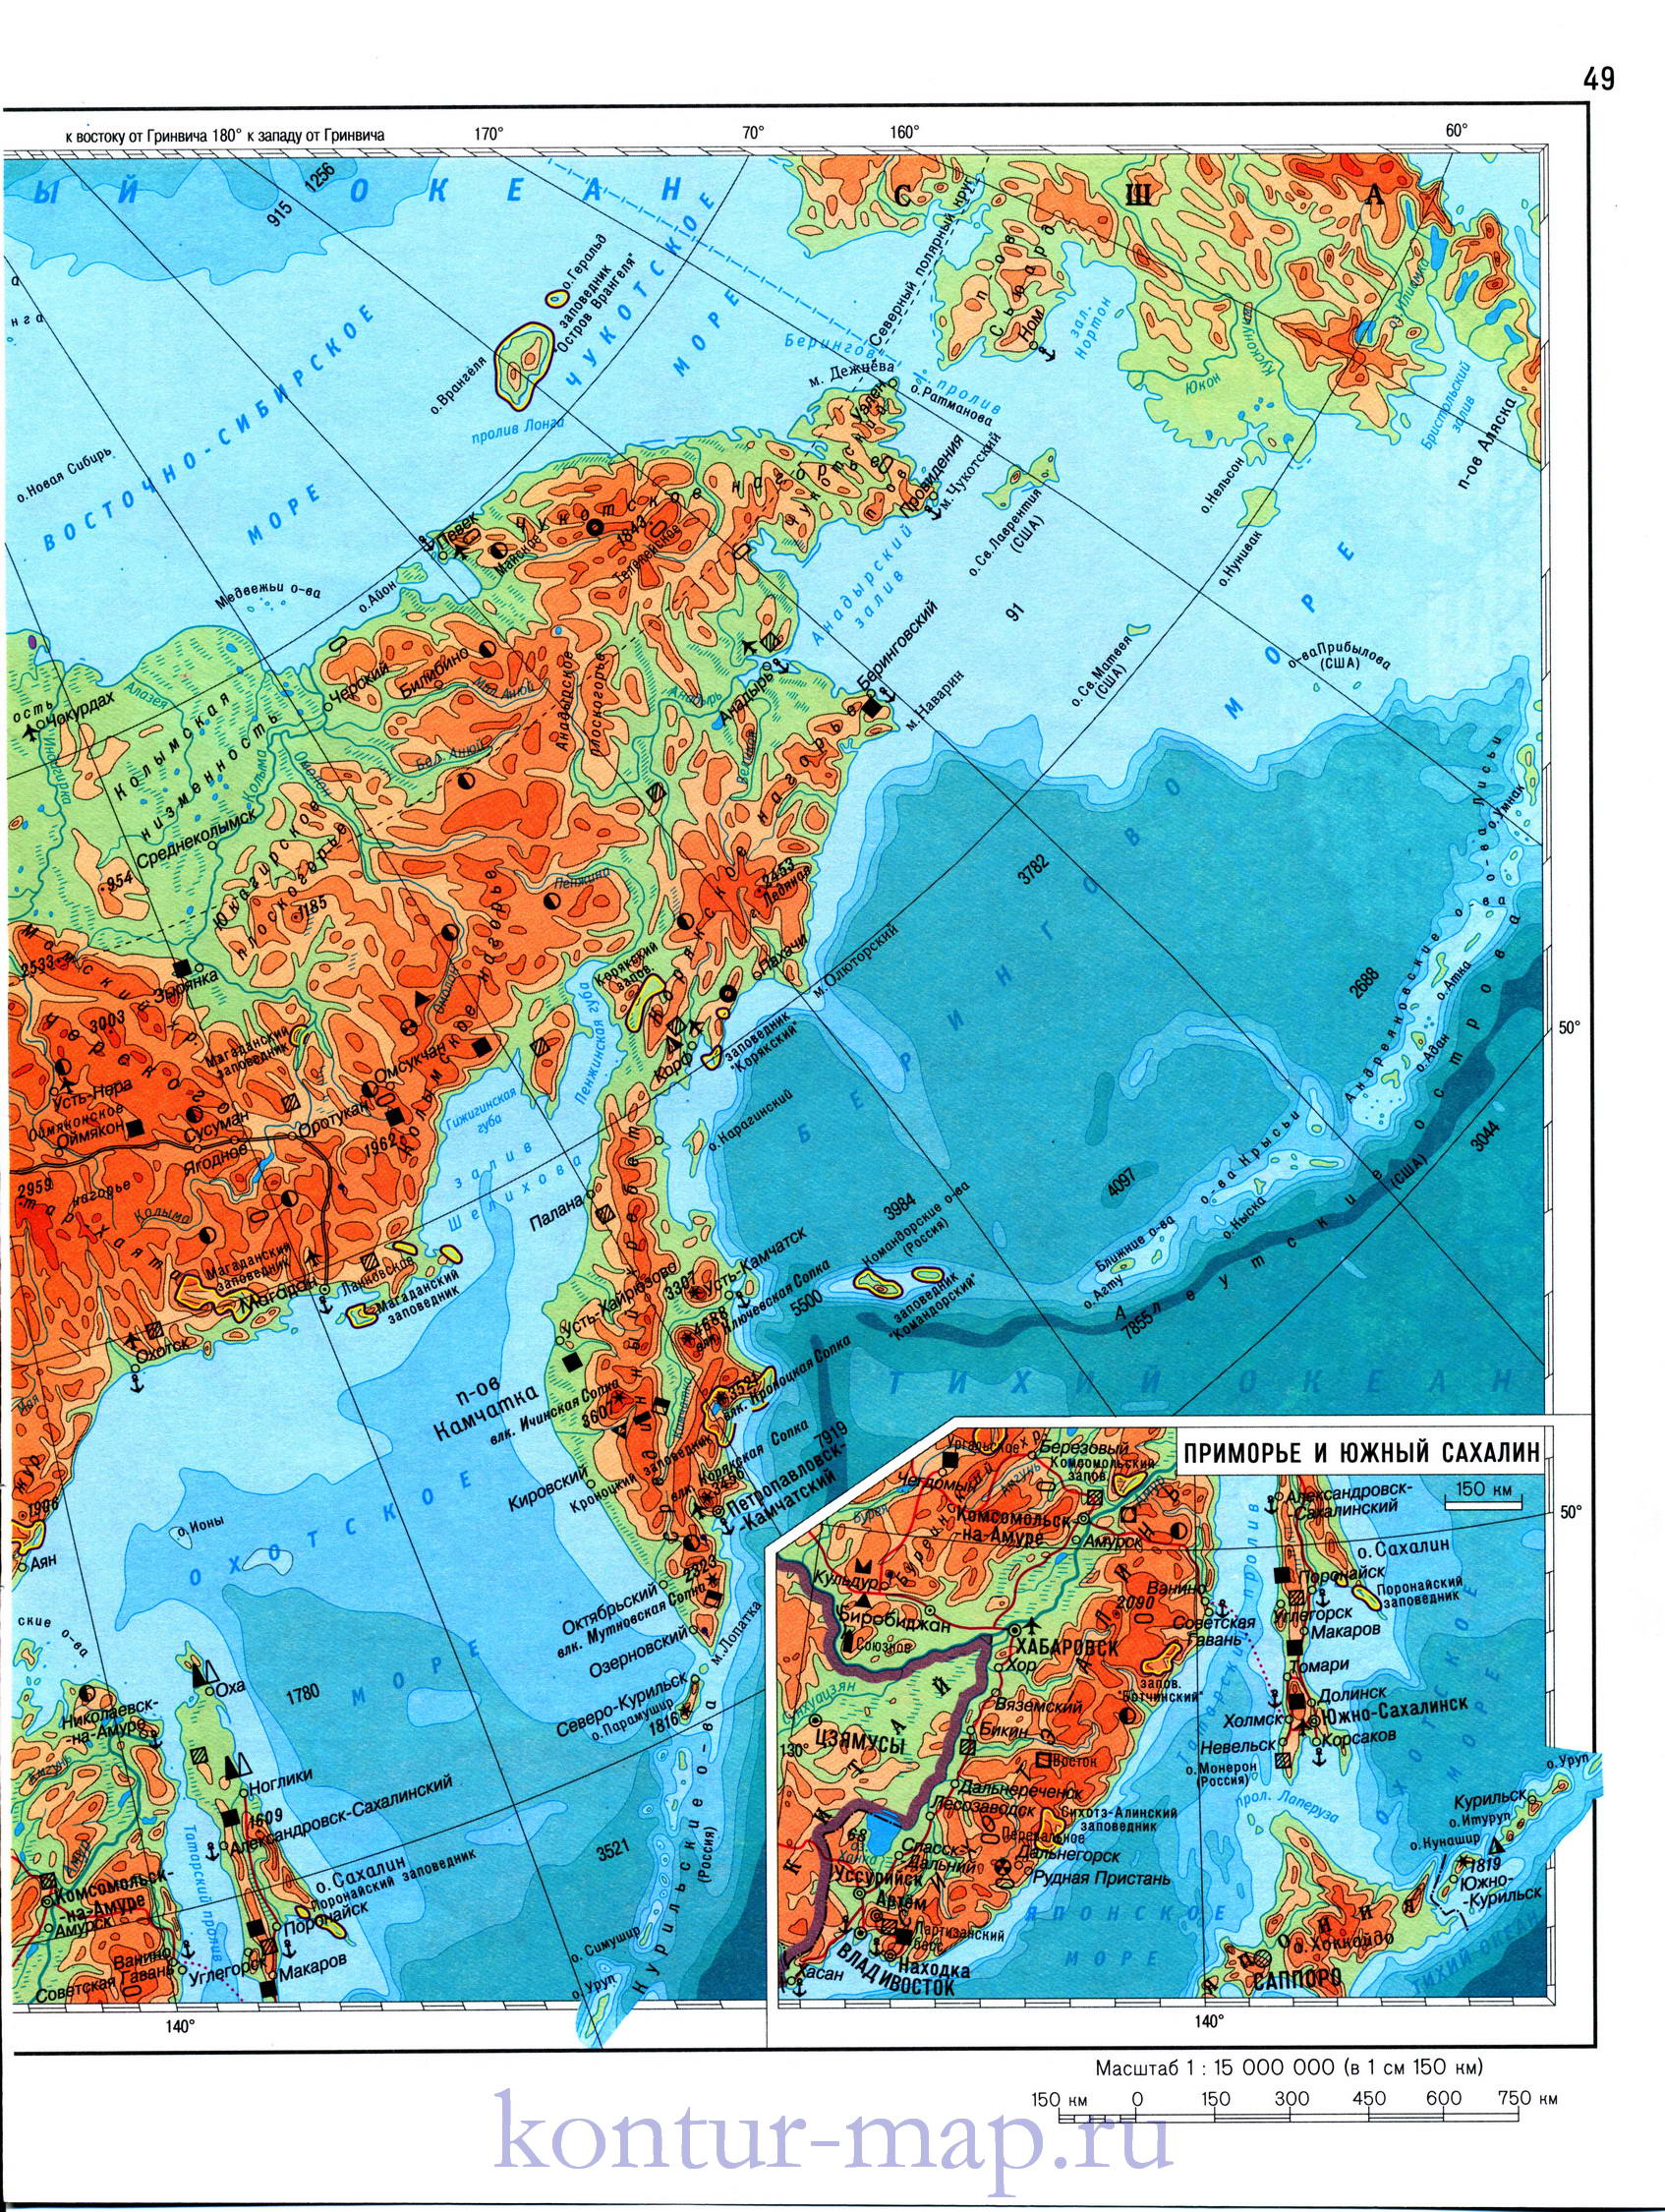 Карта Восточной Сибири и Дальнего Востока. Физическая карта - Восточная Сибирь и Дальний Восток, B0 - 